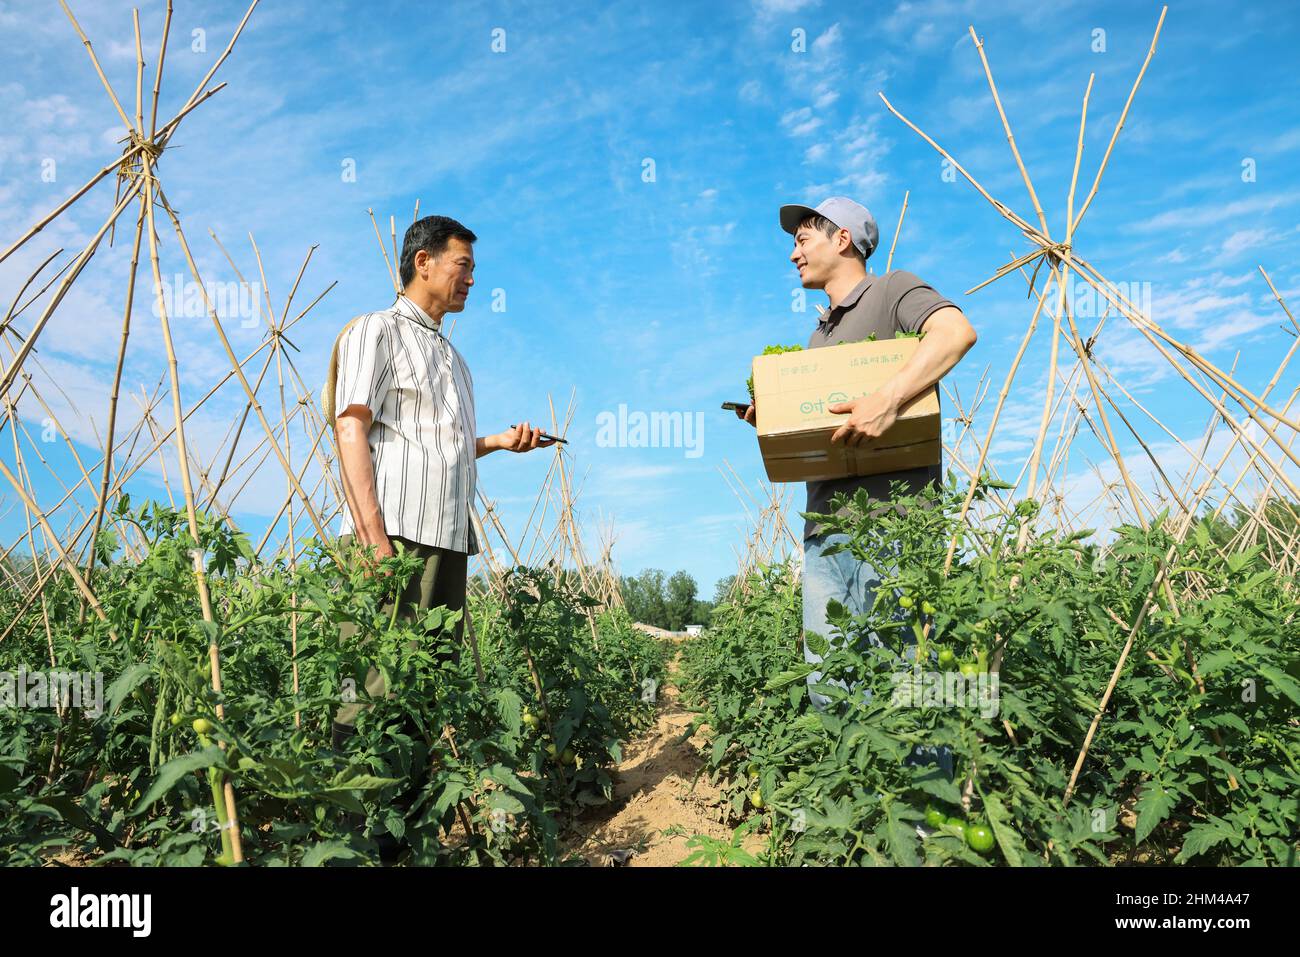 Les agriculteurs expriment des légumes Banque D'Images